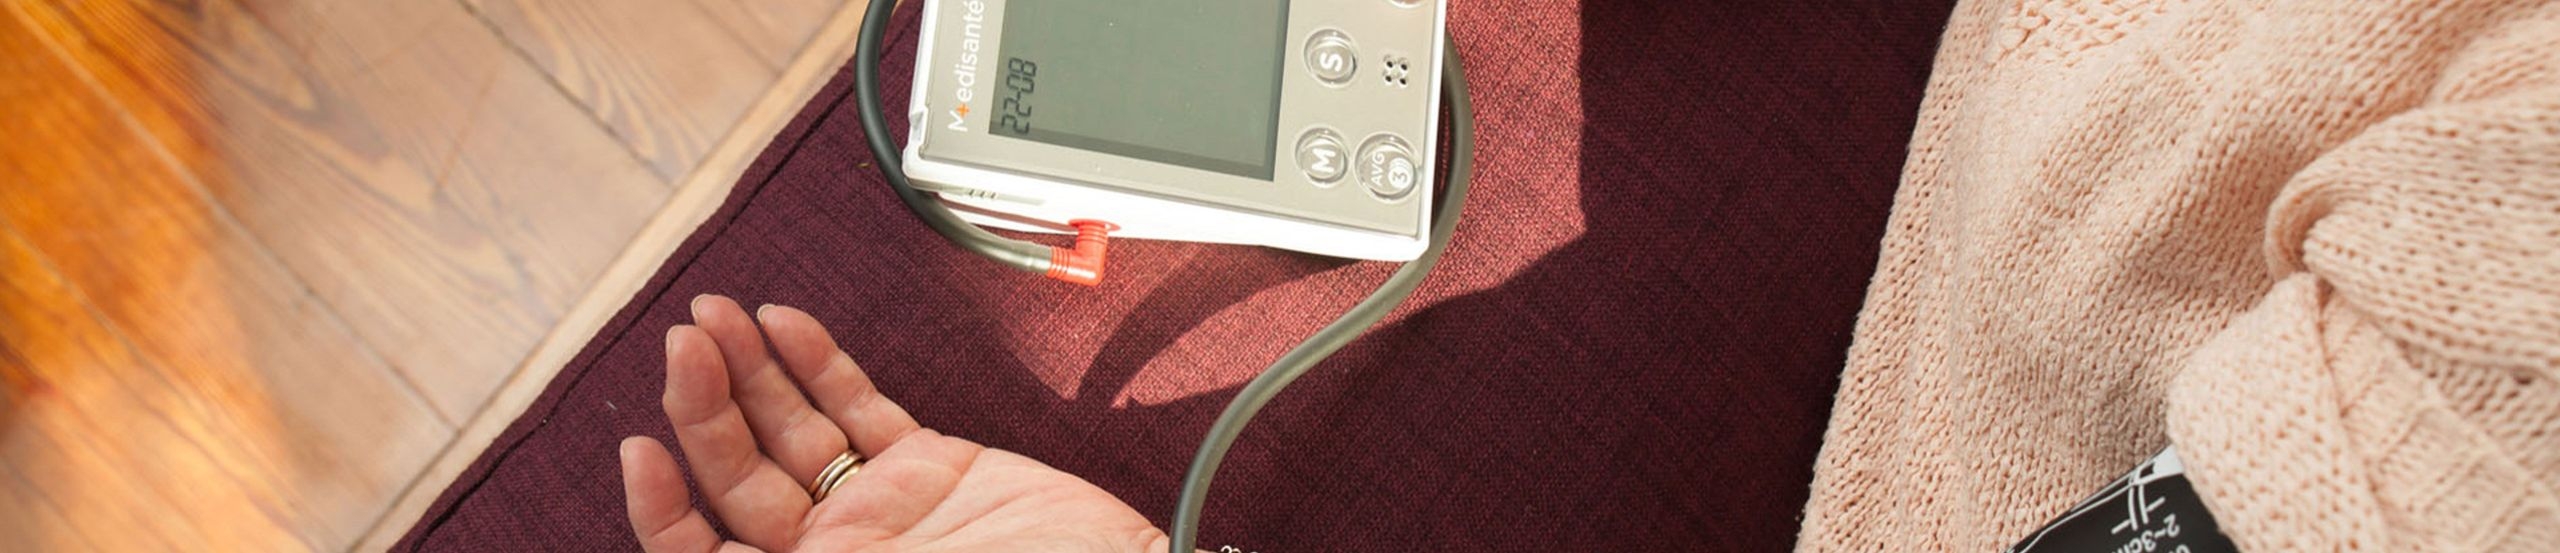 Eine Person hat den linken Arm mit einem Blutdruckmessgerät verbunden und betätigt mit der rechten Hand eine Taste auf diesem Gerät.